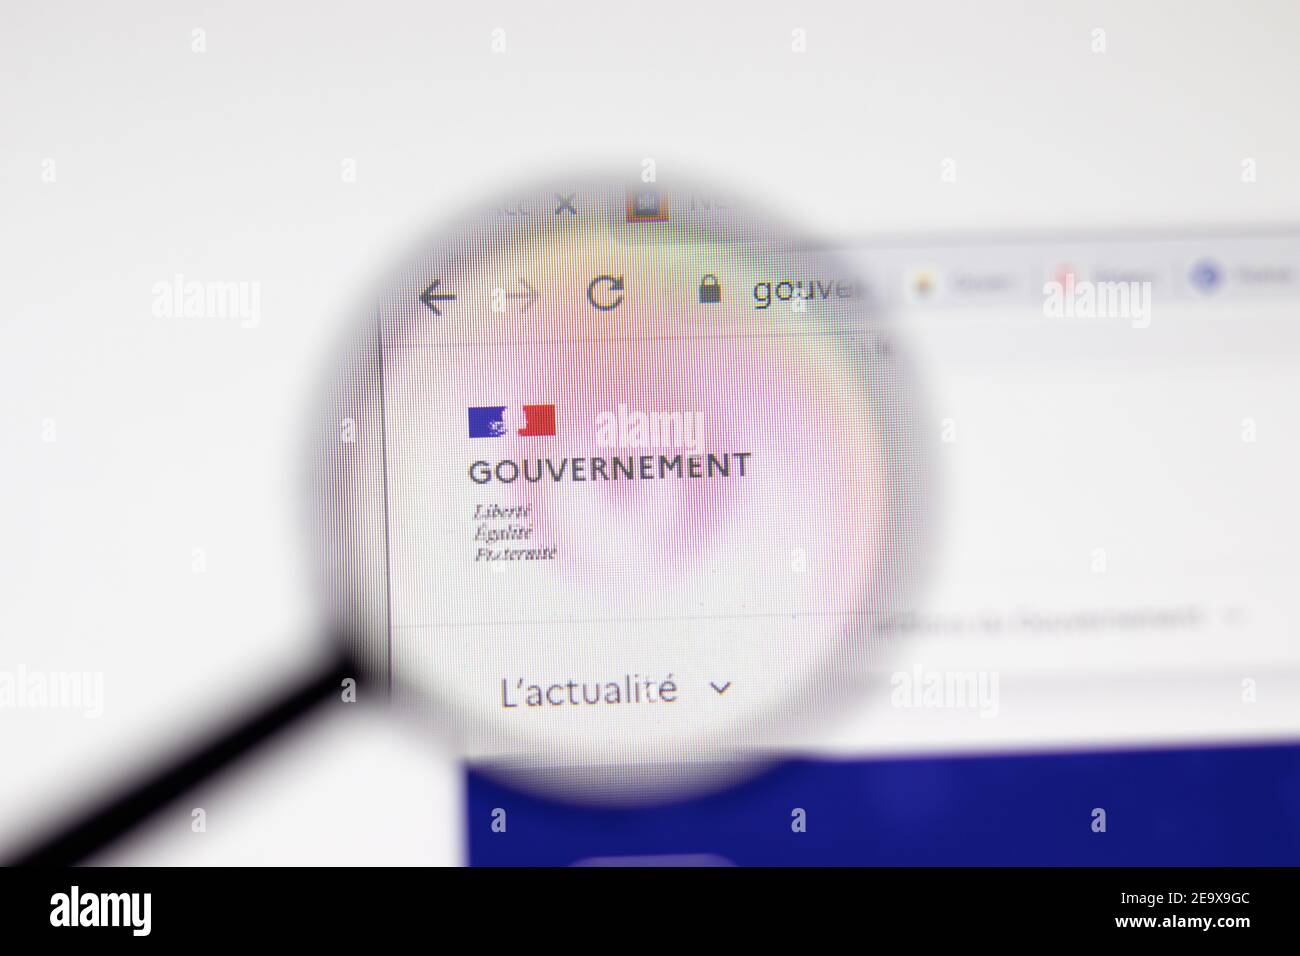 Los Angeles, EE.UU. - 1 de febrero de 2021: Página web del Gobierno de Francia. Gouvernement.fr logo en pantalla, editorial ilustrativa Foto de stock